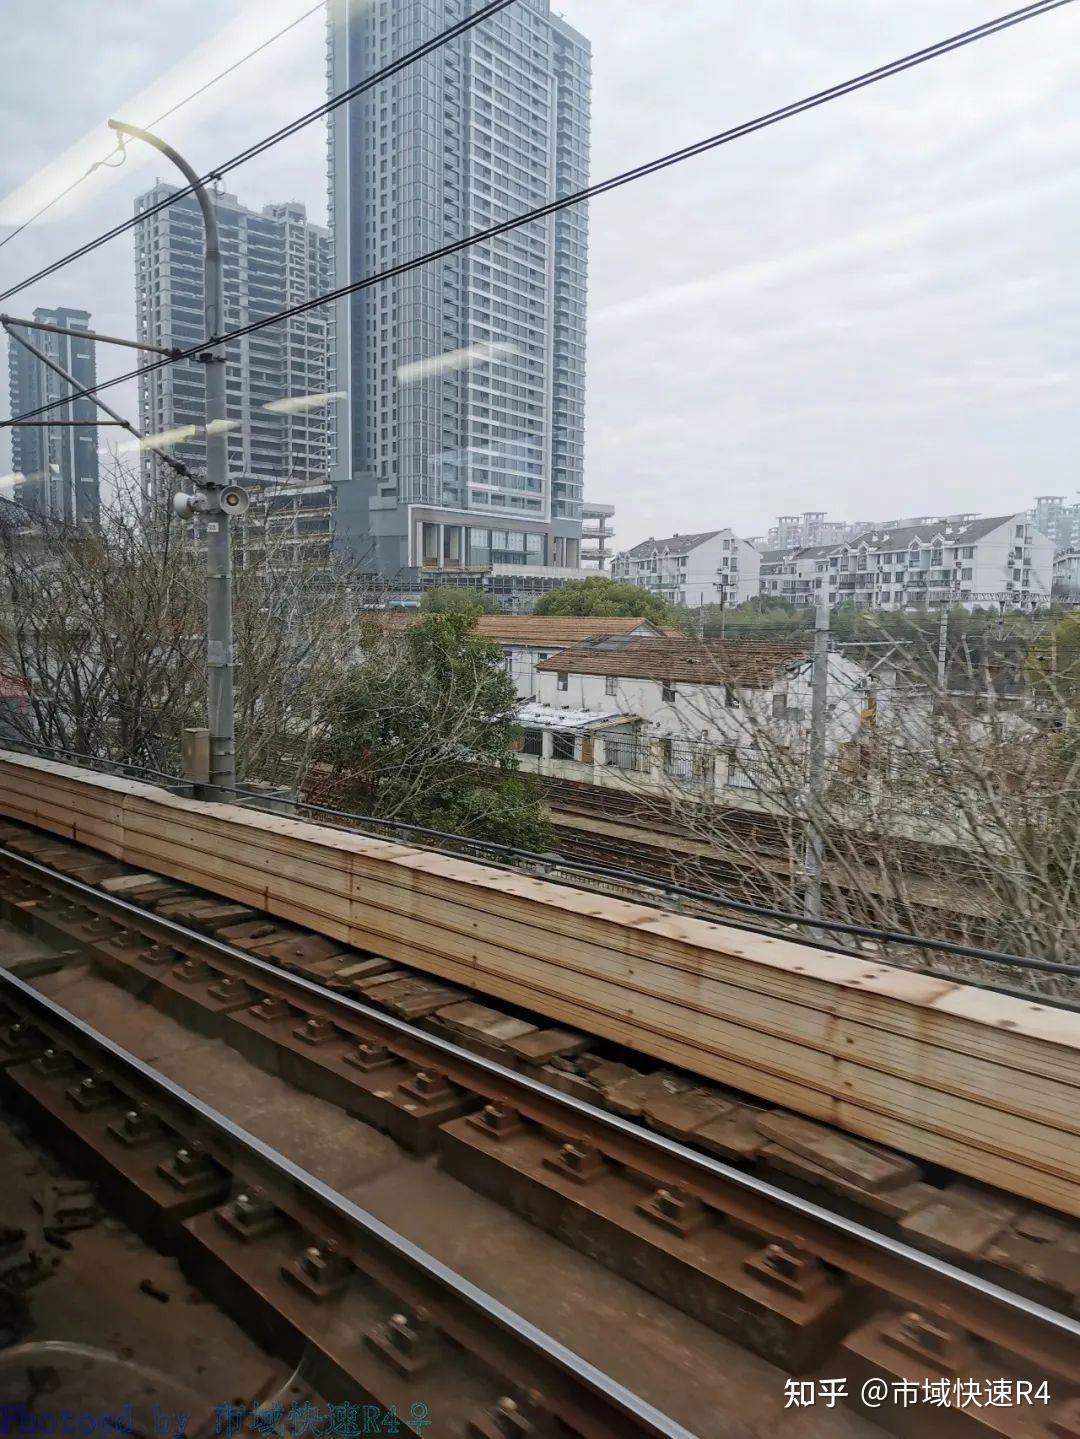 木制道枕,所有列车全部颛桥折返,莘庄站与颛桥站之间采用免费公交接驳